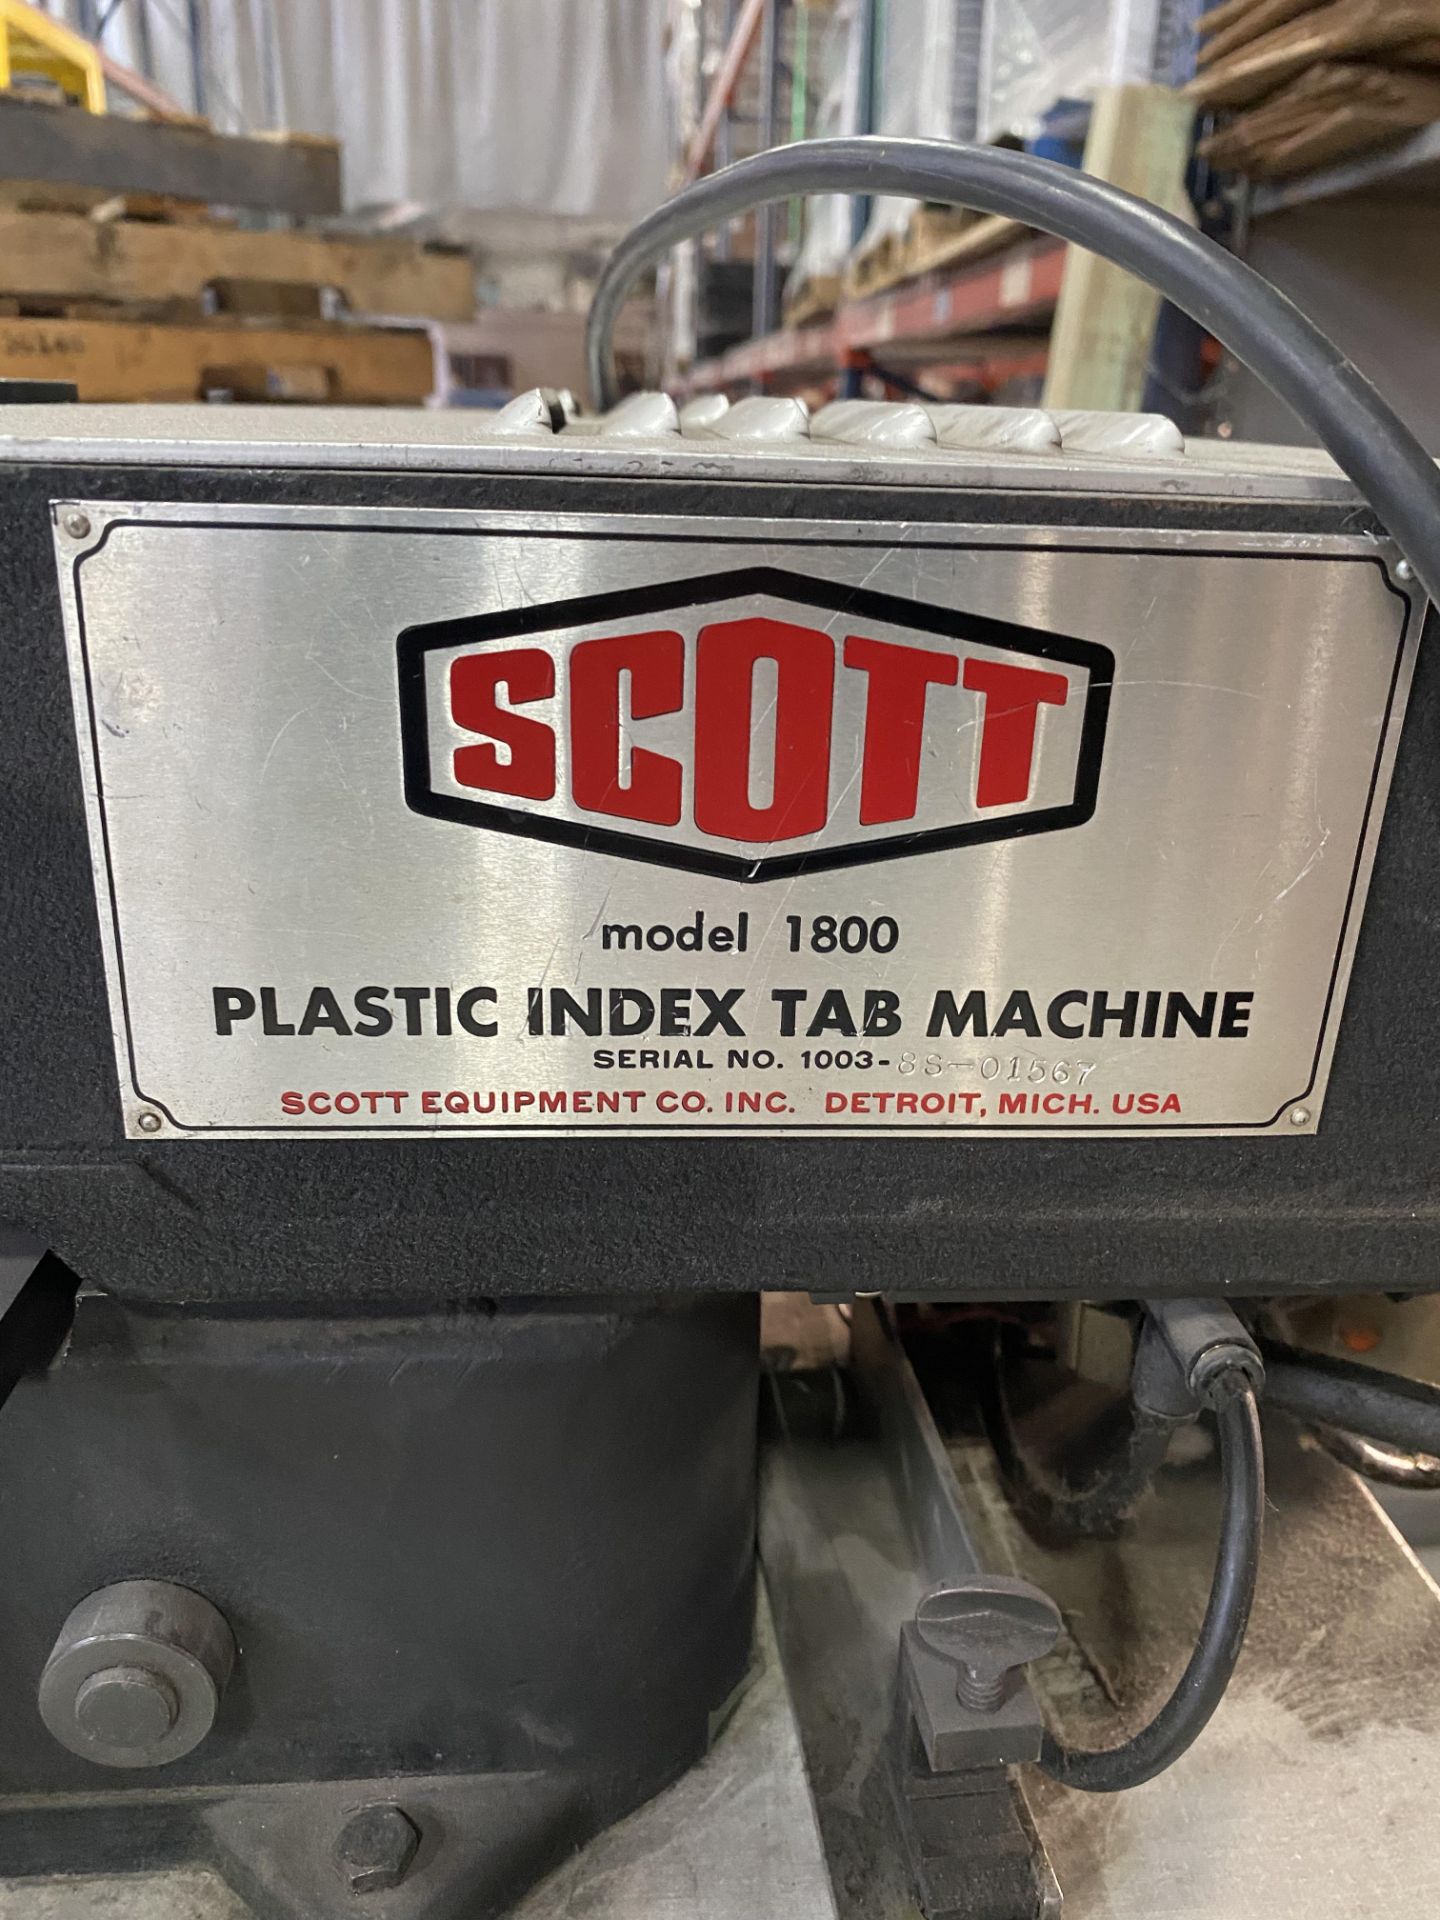 Scott 1800 Plastic Index Tab Machine s/n 1003-8S-01567 - Image 4 of 6